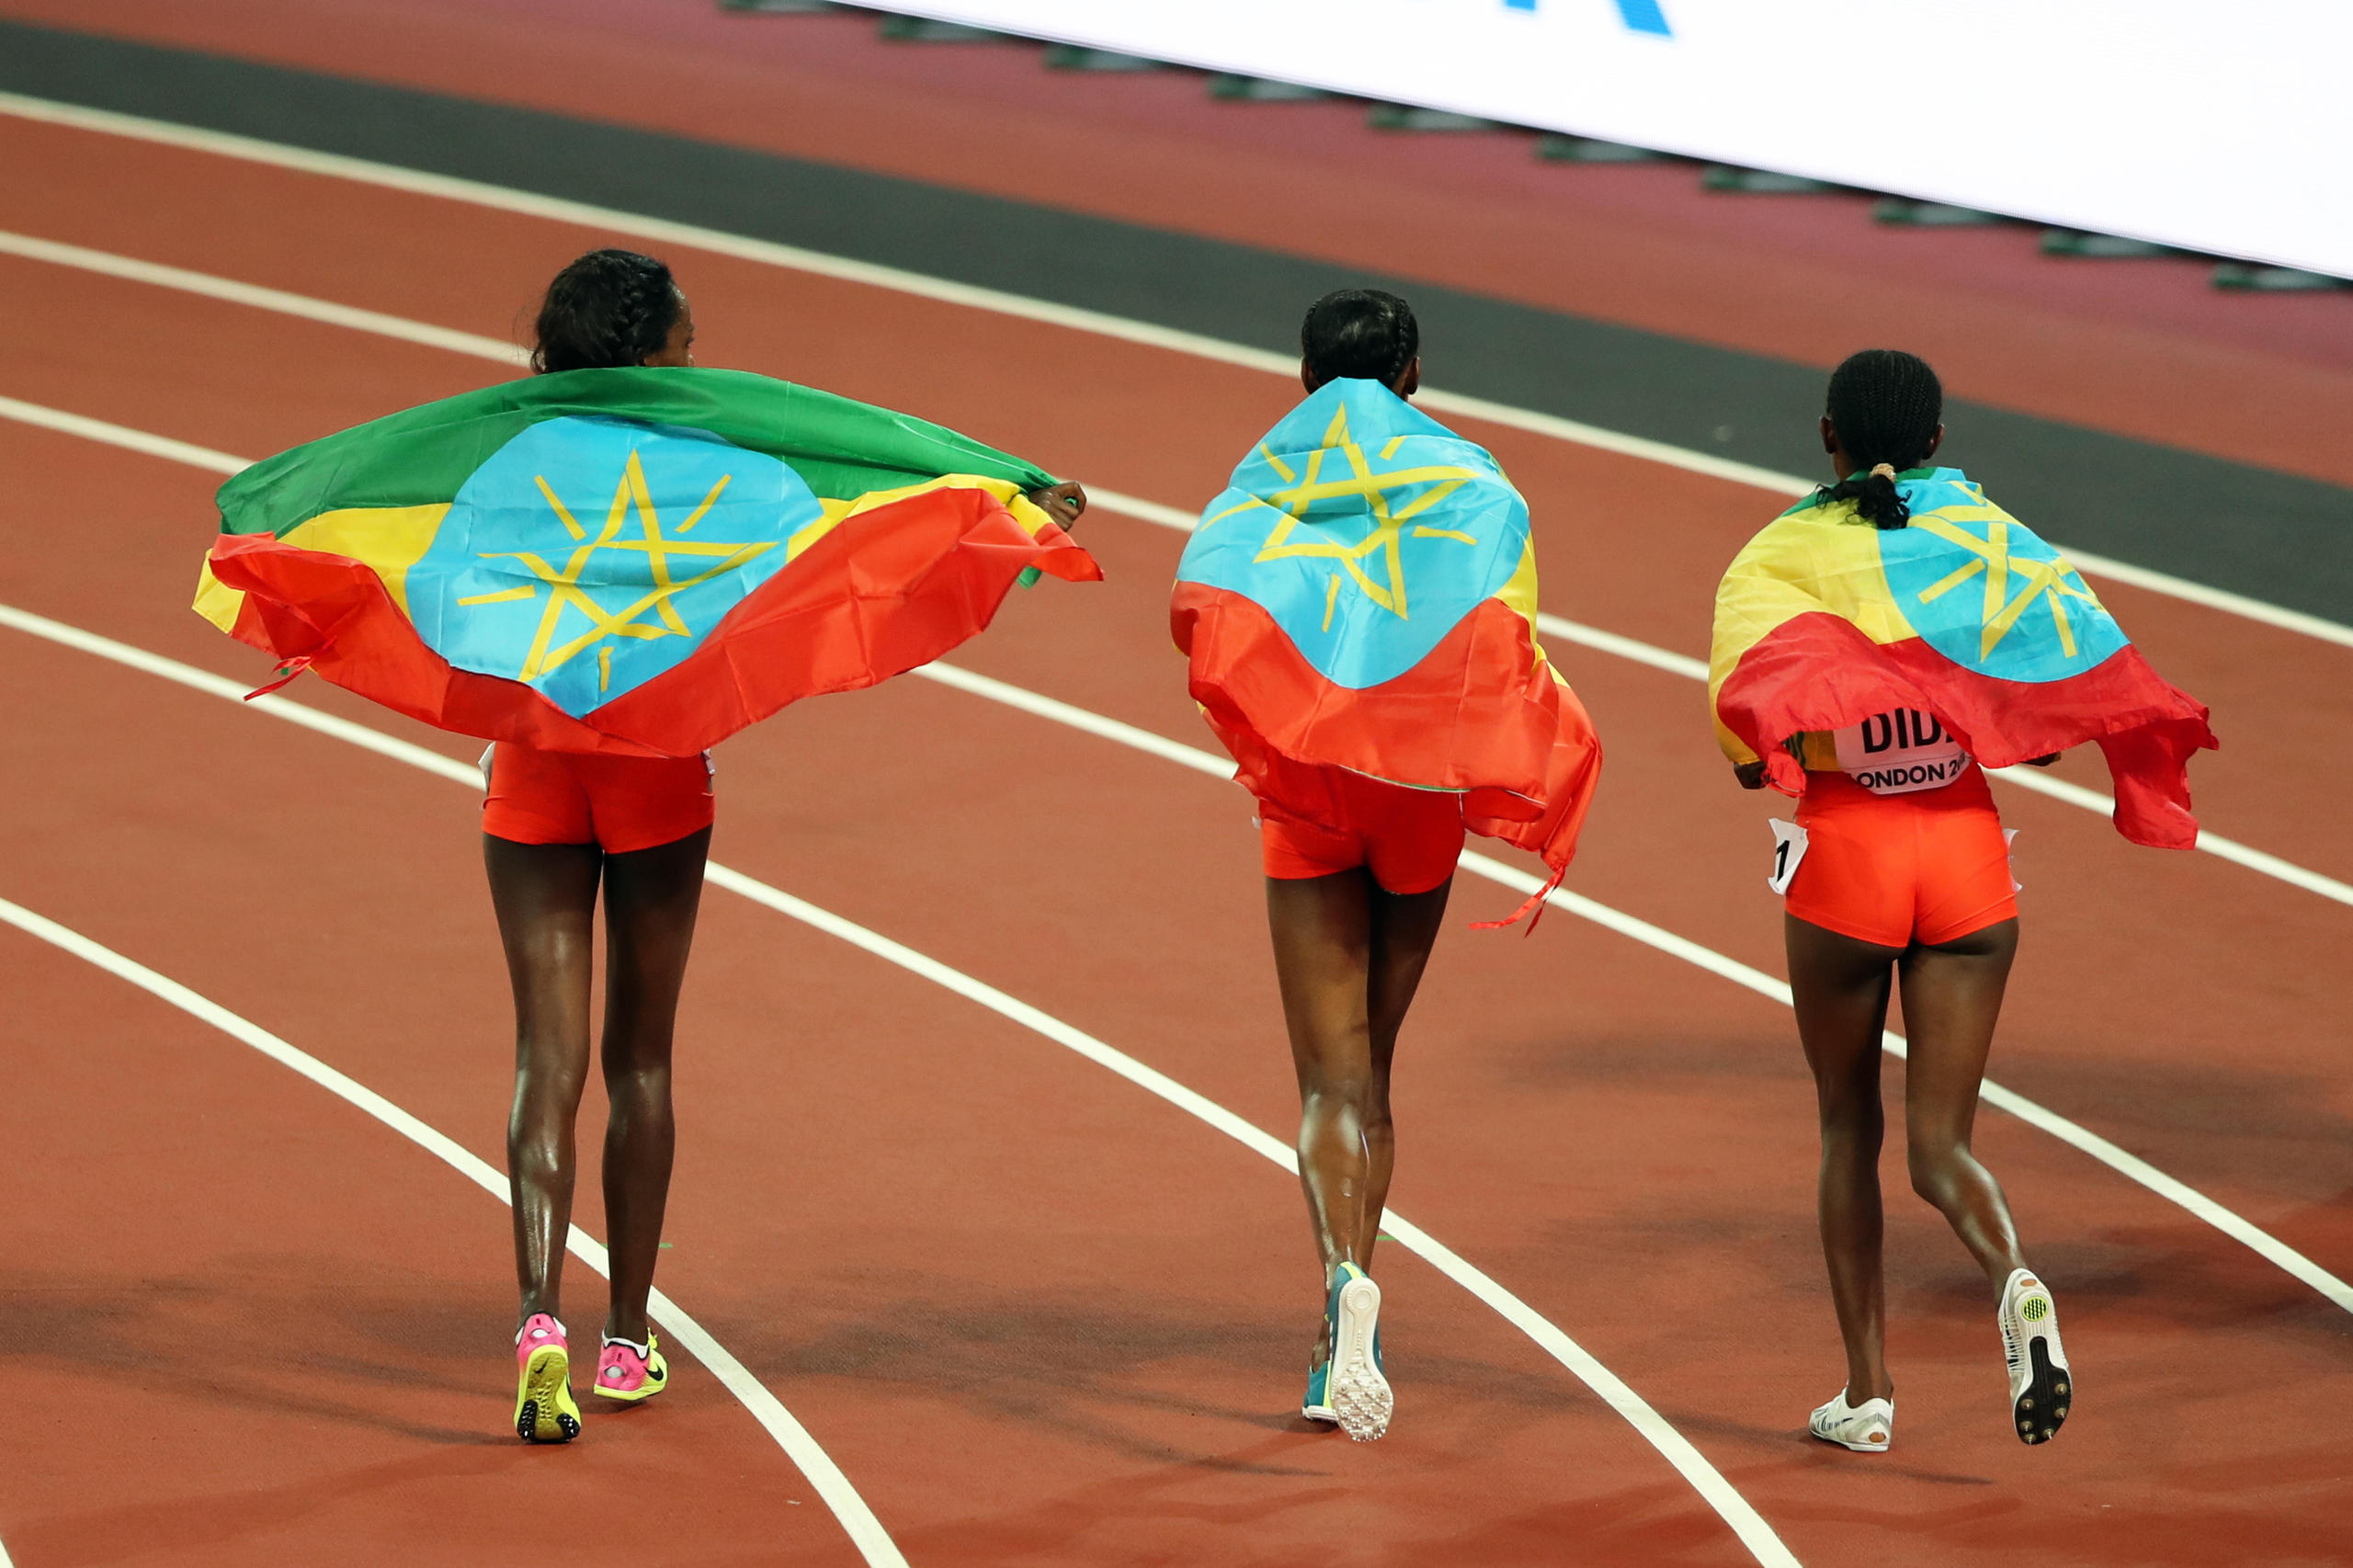 Drei Läuferinne数十名埃塞俄比亚女性跑步选手举报称，她们遭受了男教练和经纪人的性剥削和虐待。n von Hinten